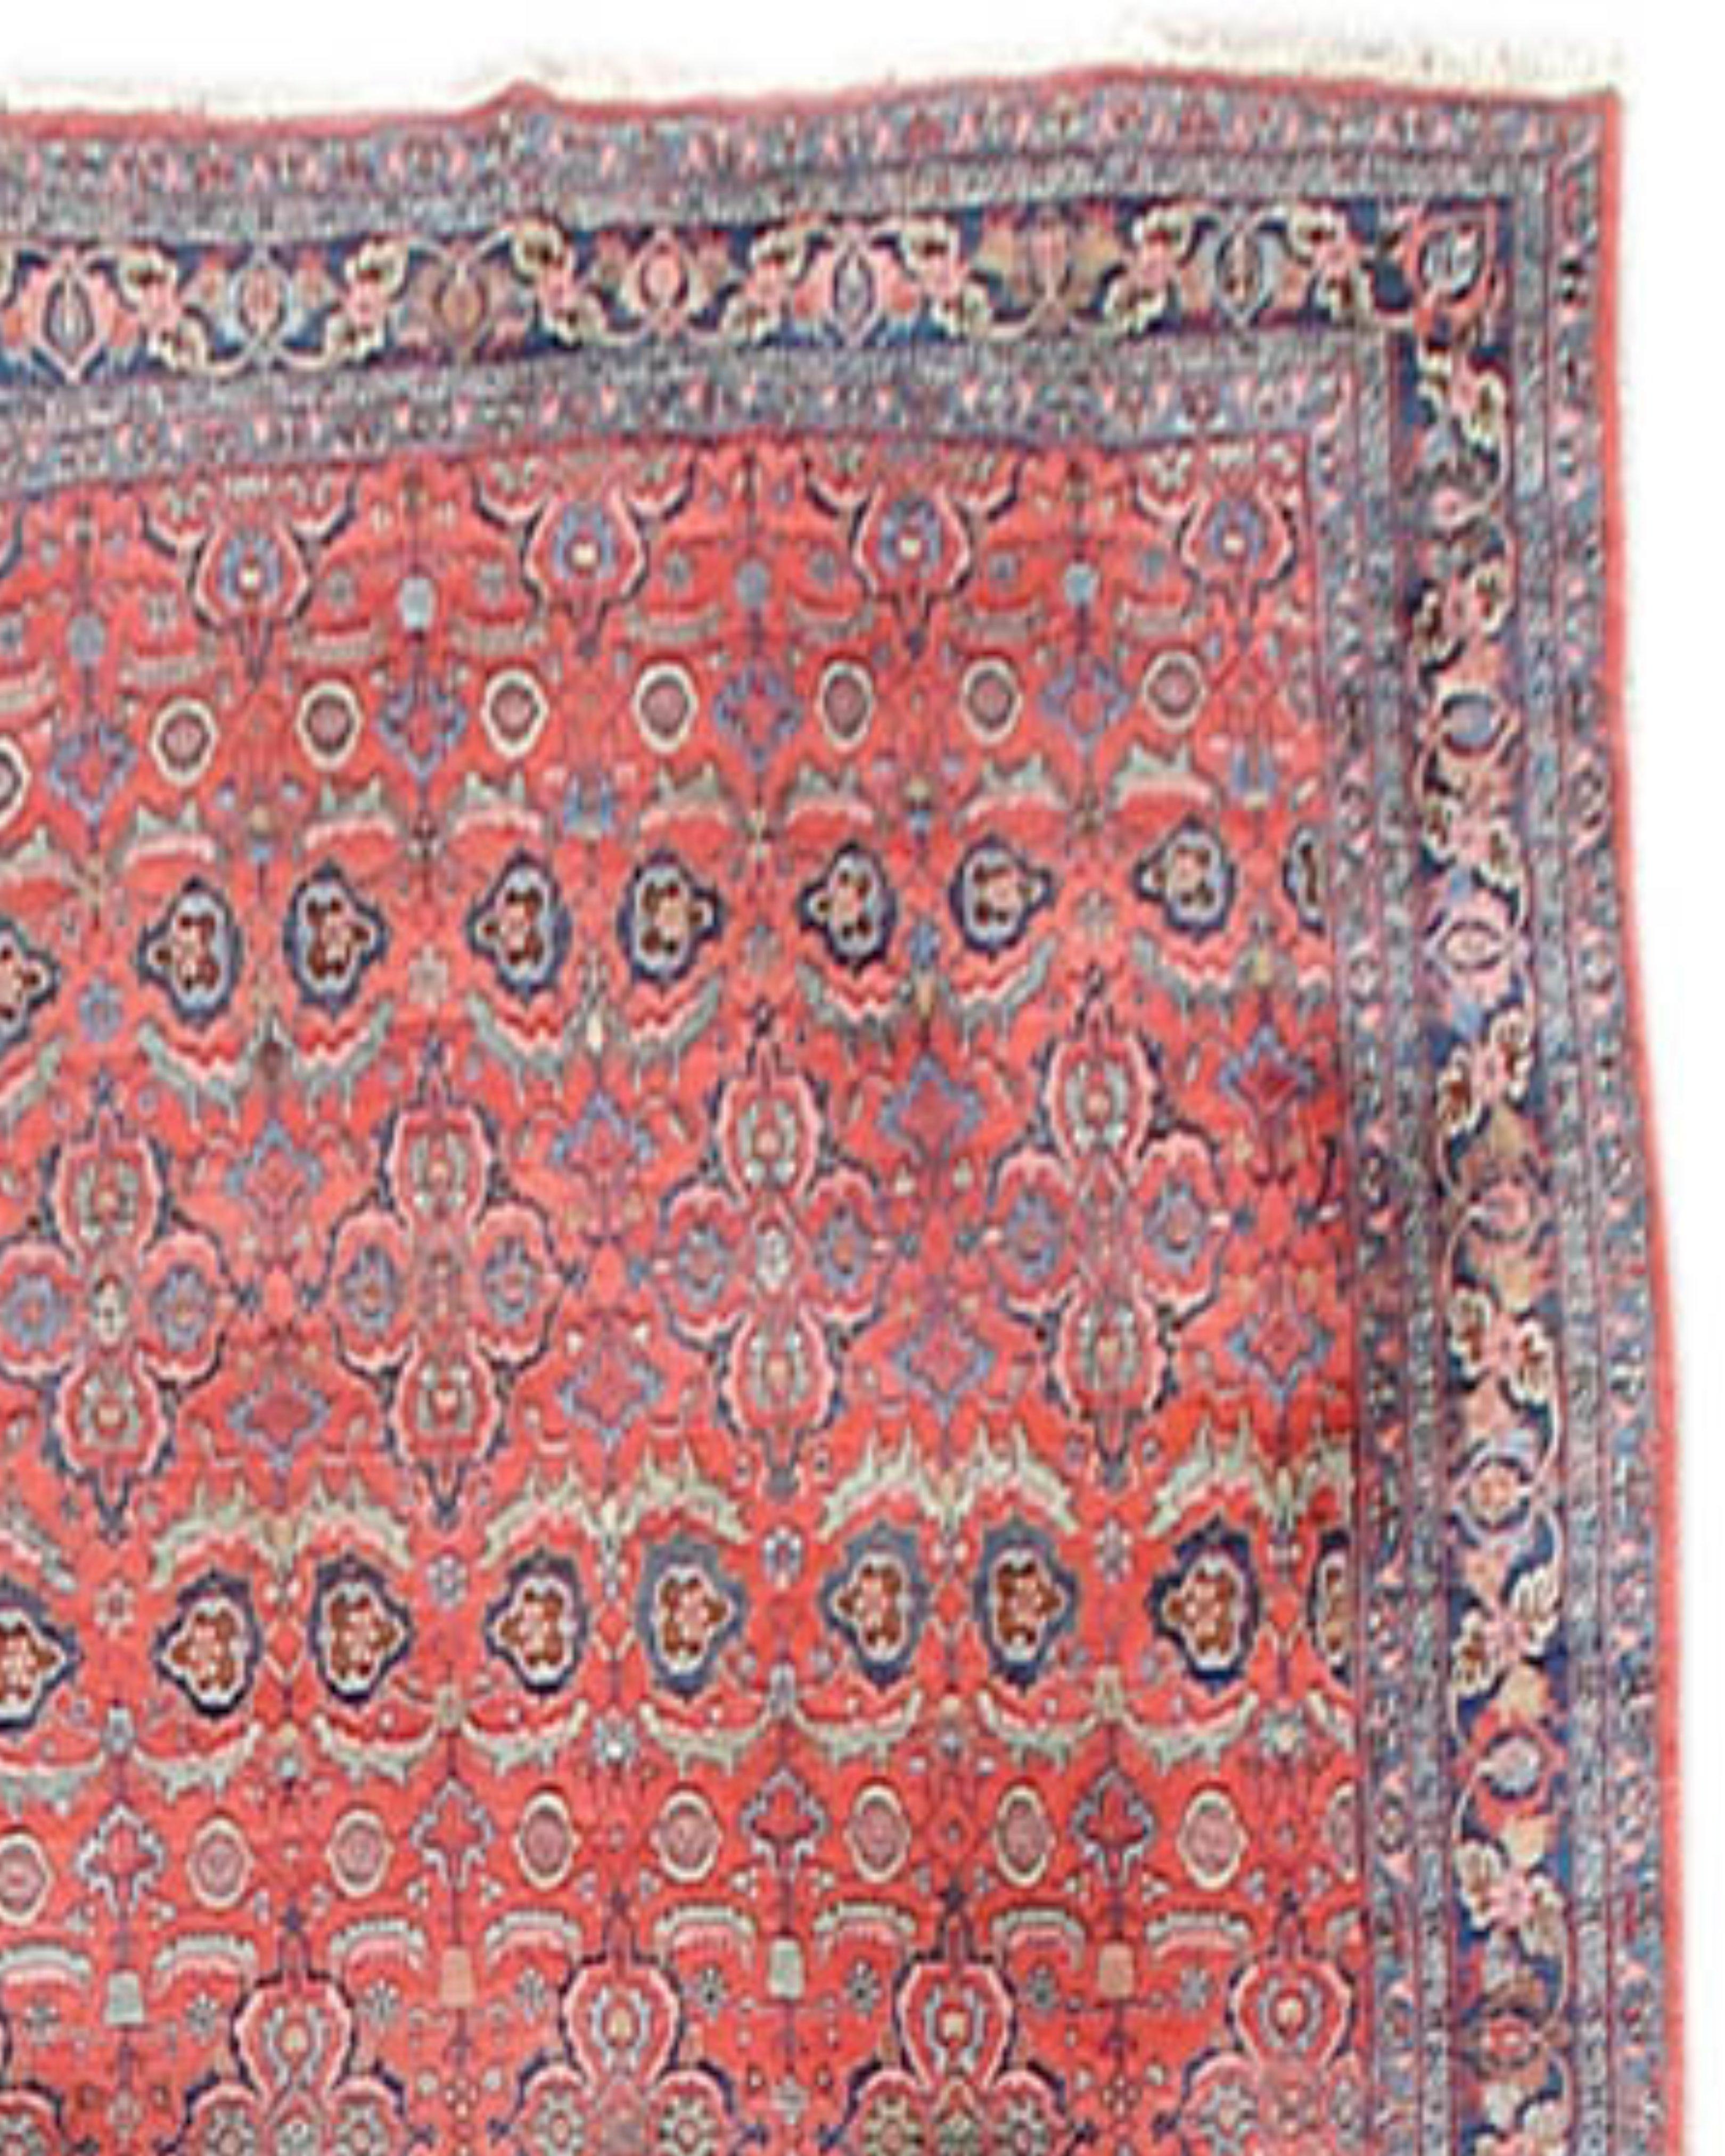 Großer antiker persischer Bidjar-Teppich, frühes 20. Jahrhundert

Die feine Zeichnung in Verbindung mit der robusten Konstruktion ist das Markenzeichen der großen Bidjar-Teppiche. Dieses elegante, übergroße Exemplar steht in einer Reihe mit den